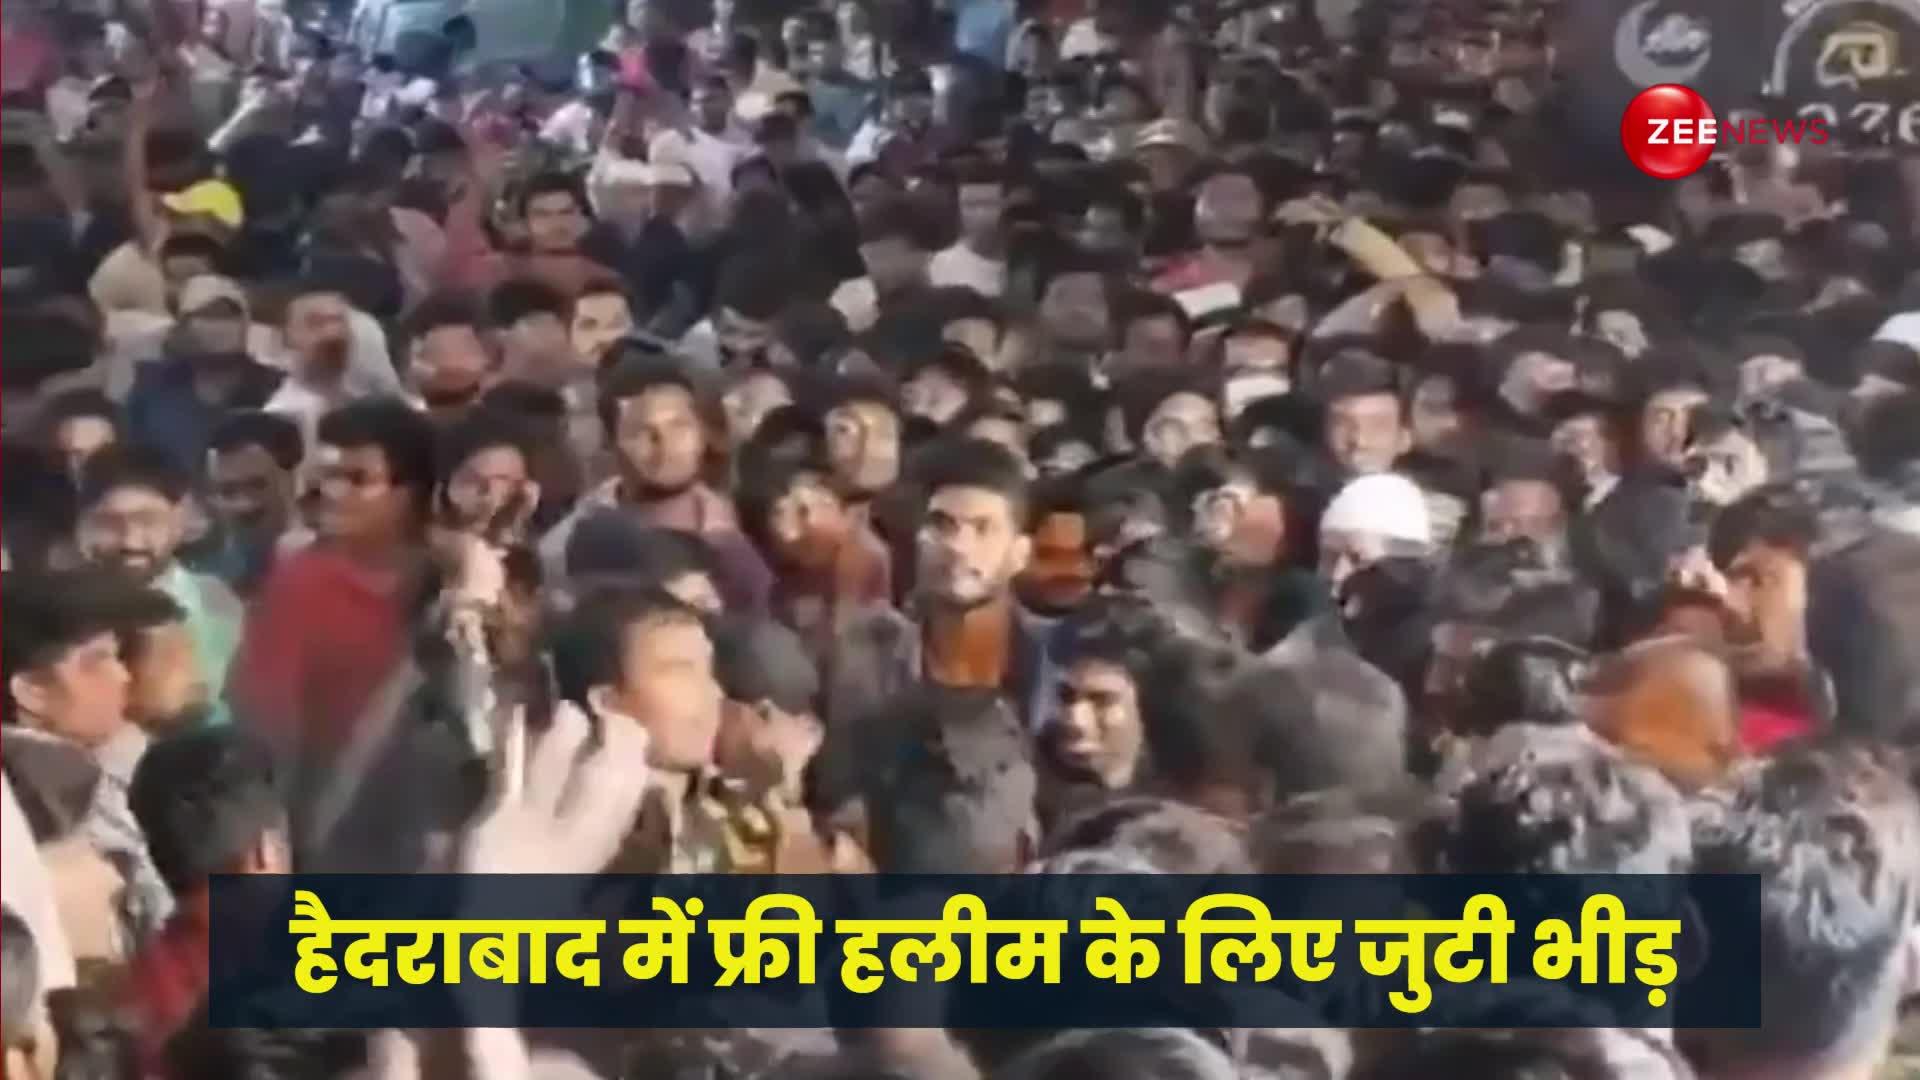 हैदराबाद: रमजान में फ्री हलीम के लिए बेकाबू हुई भीड़, पुलिस ने किया लाठीचार्ज